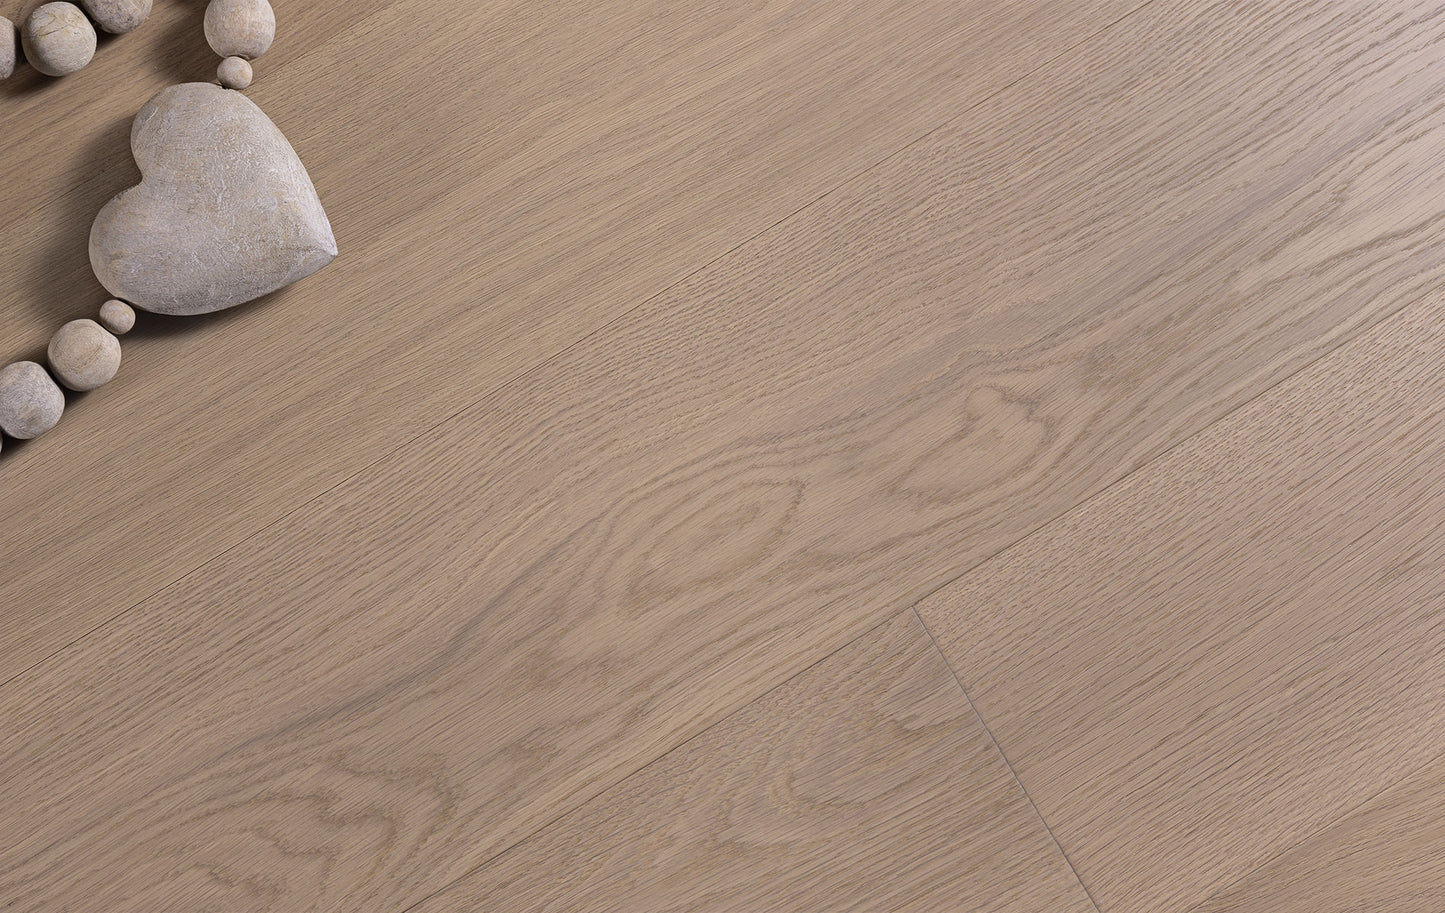 Plancher de bois en chêne blanc - planche large 8'' - platine gris/brun, traçable, écoresponsable, certifié - Aberdeen